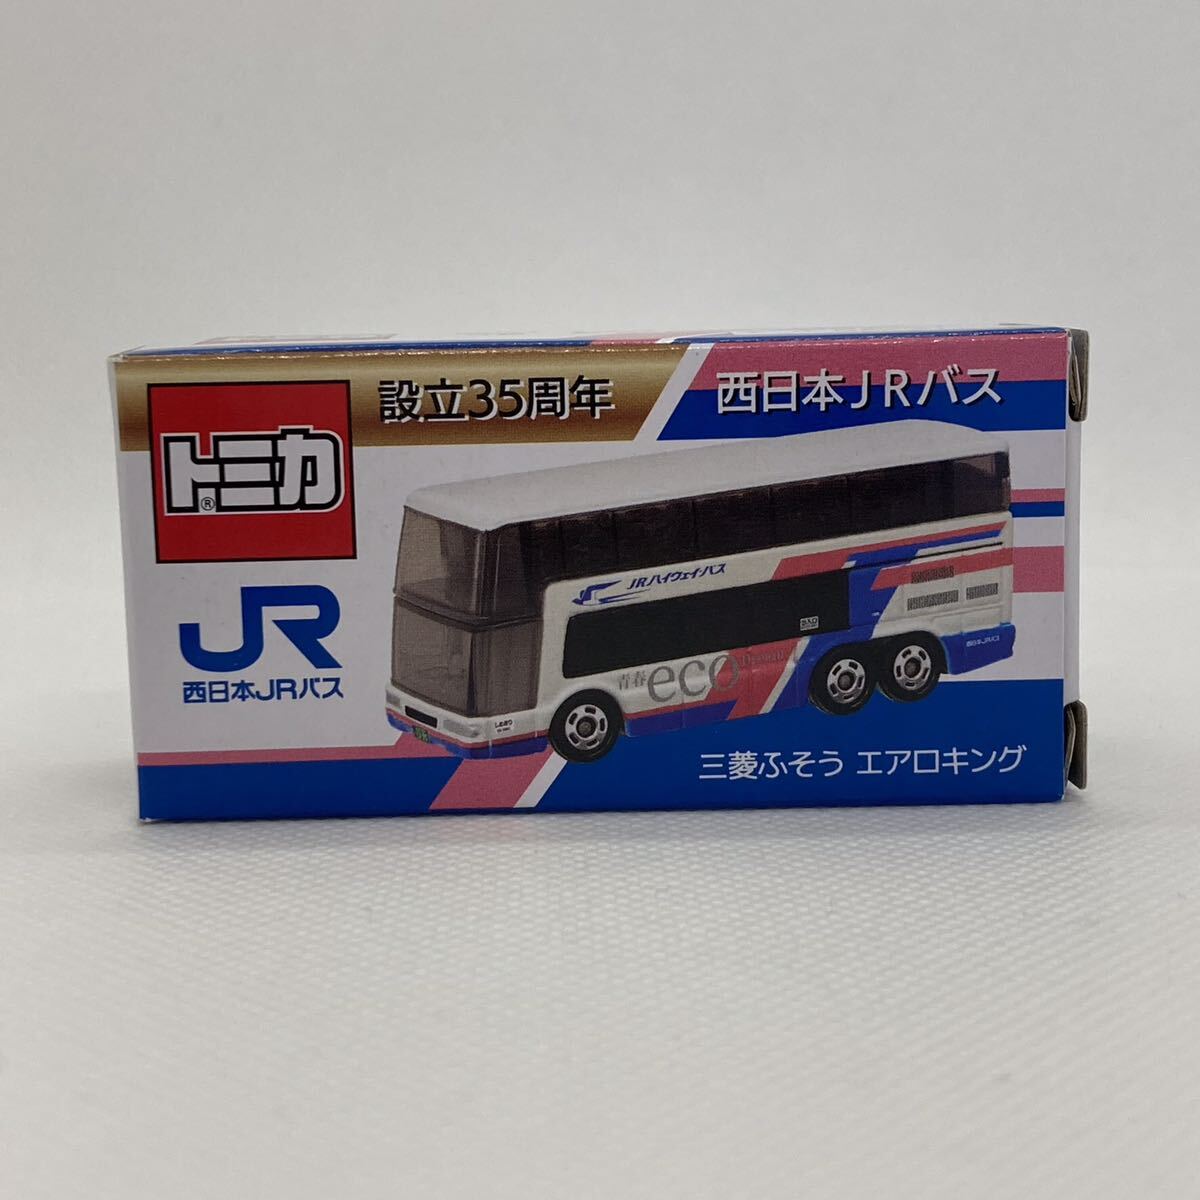 新品未開封 トミカ 西日本JRバス 設立35周年 三菱ふそう エアロキング _画像1